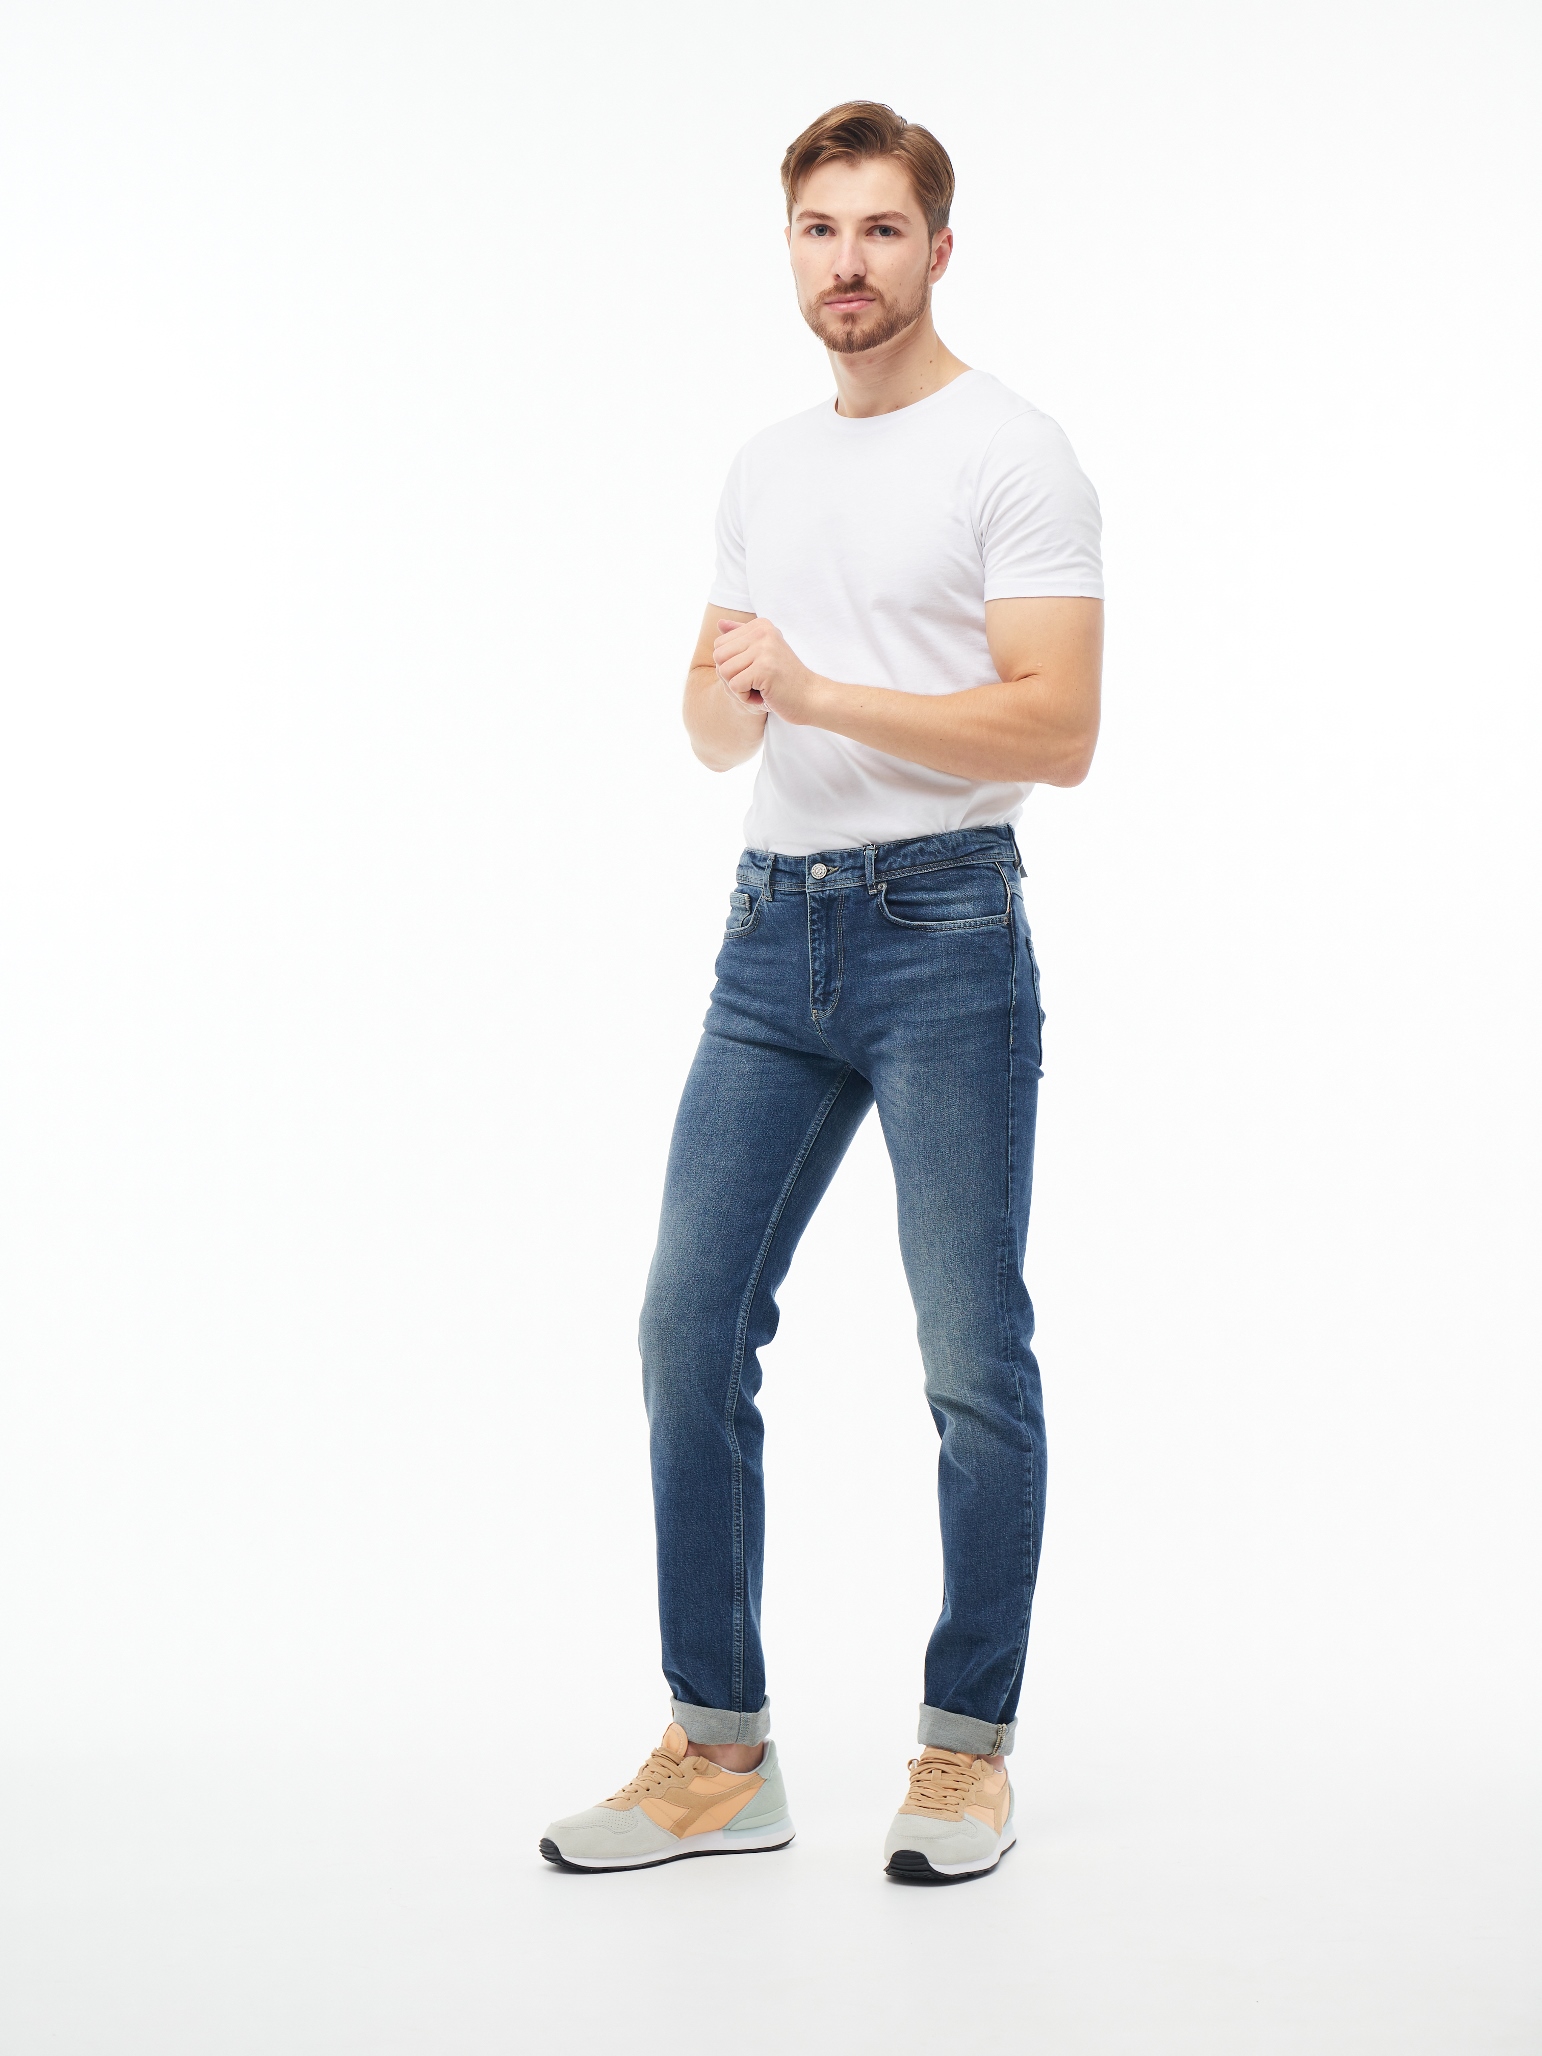 Чоловічі джинси Slim Fit Nils 1040 | Men's jeans Slim Fit Nils 1040